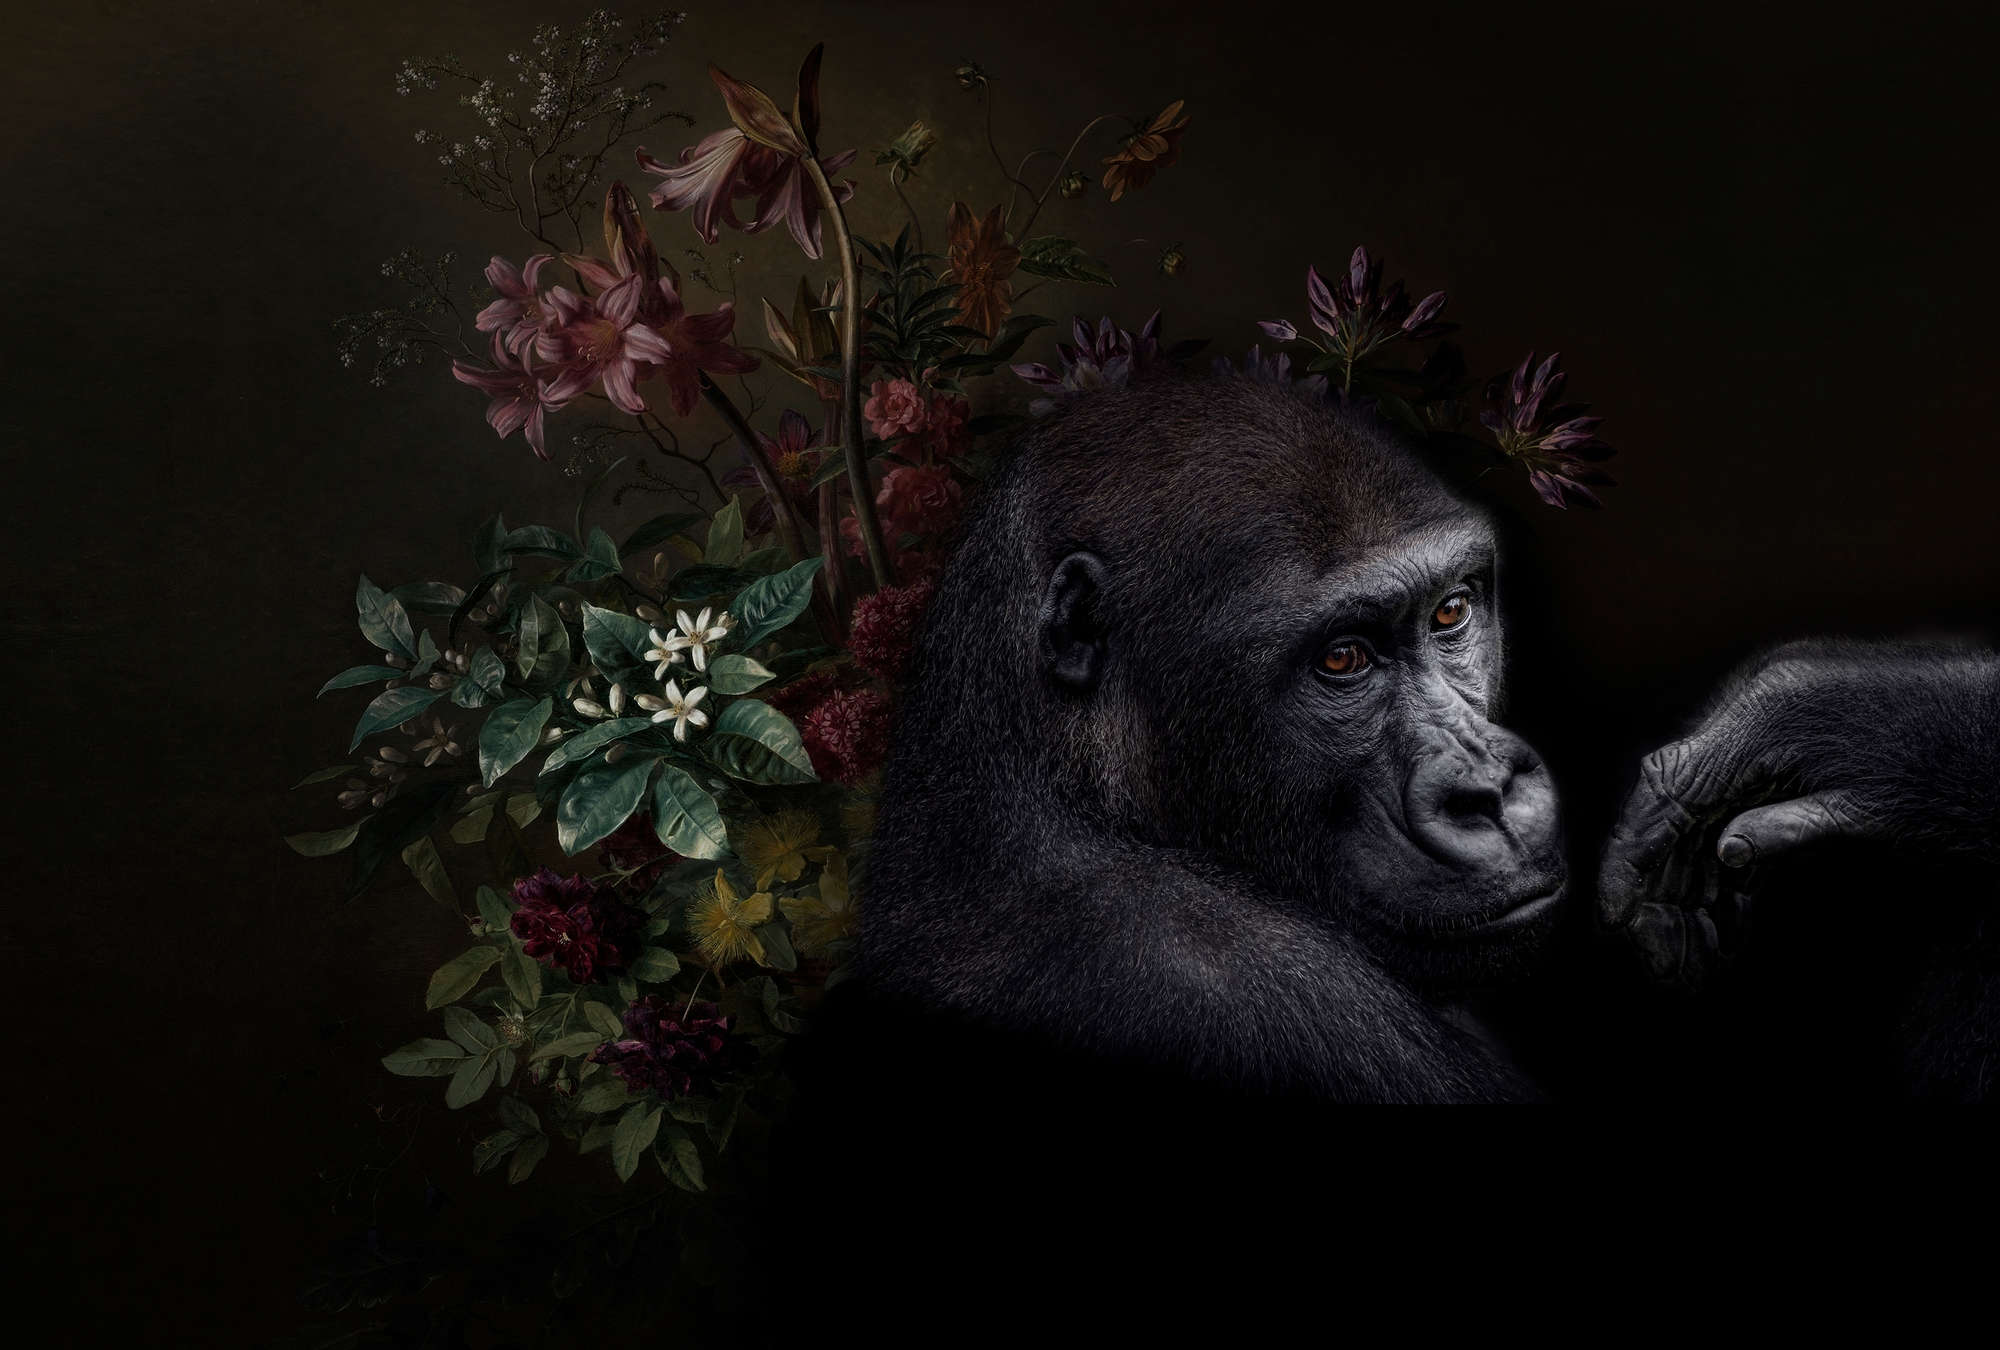             Papier peint panoramique Portrait de gorille avec des fleurs - Walls by Patel
        